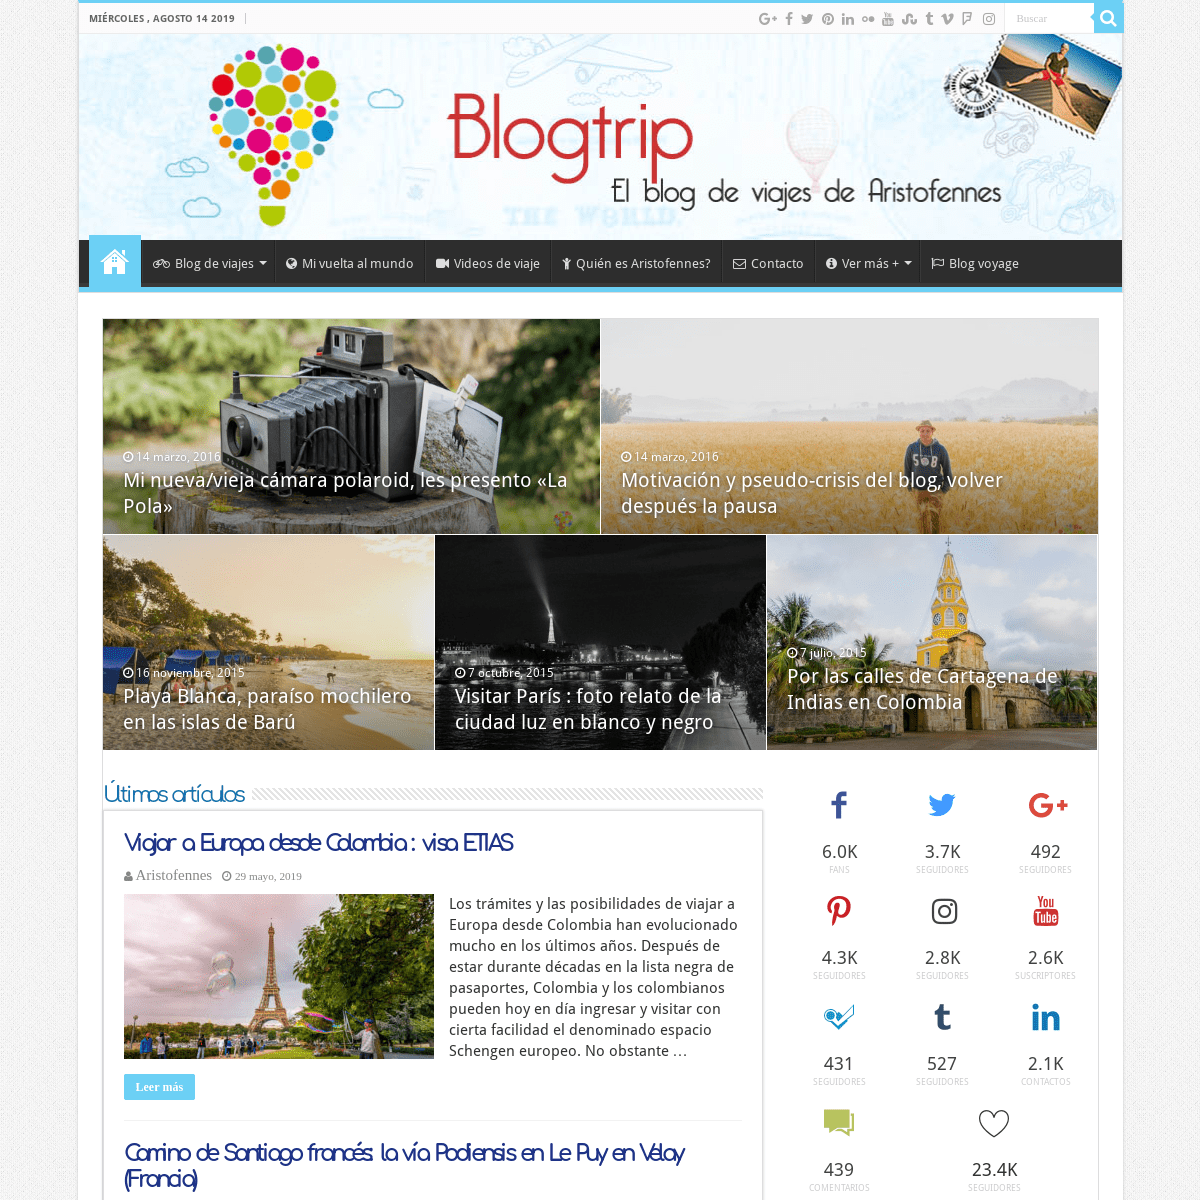 Blogtrip : blog de viajes de Aristofennes, viajar el mundo